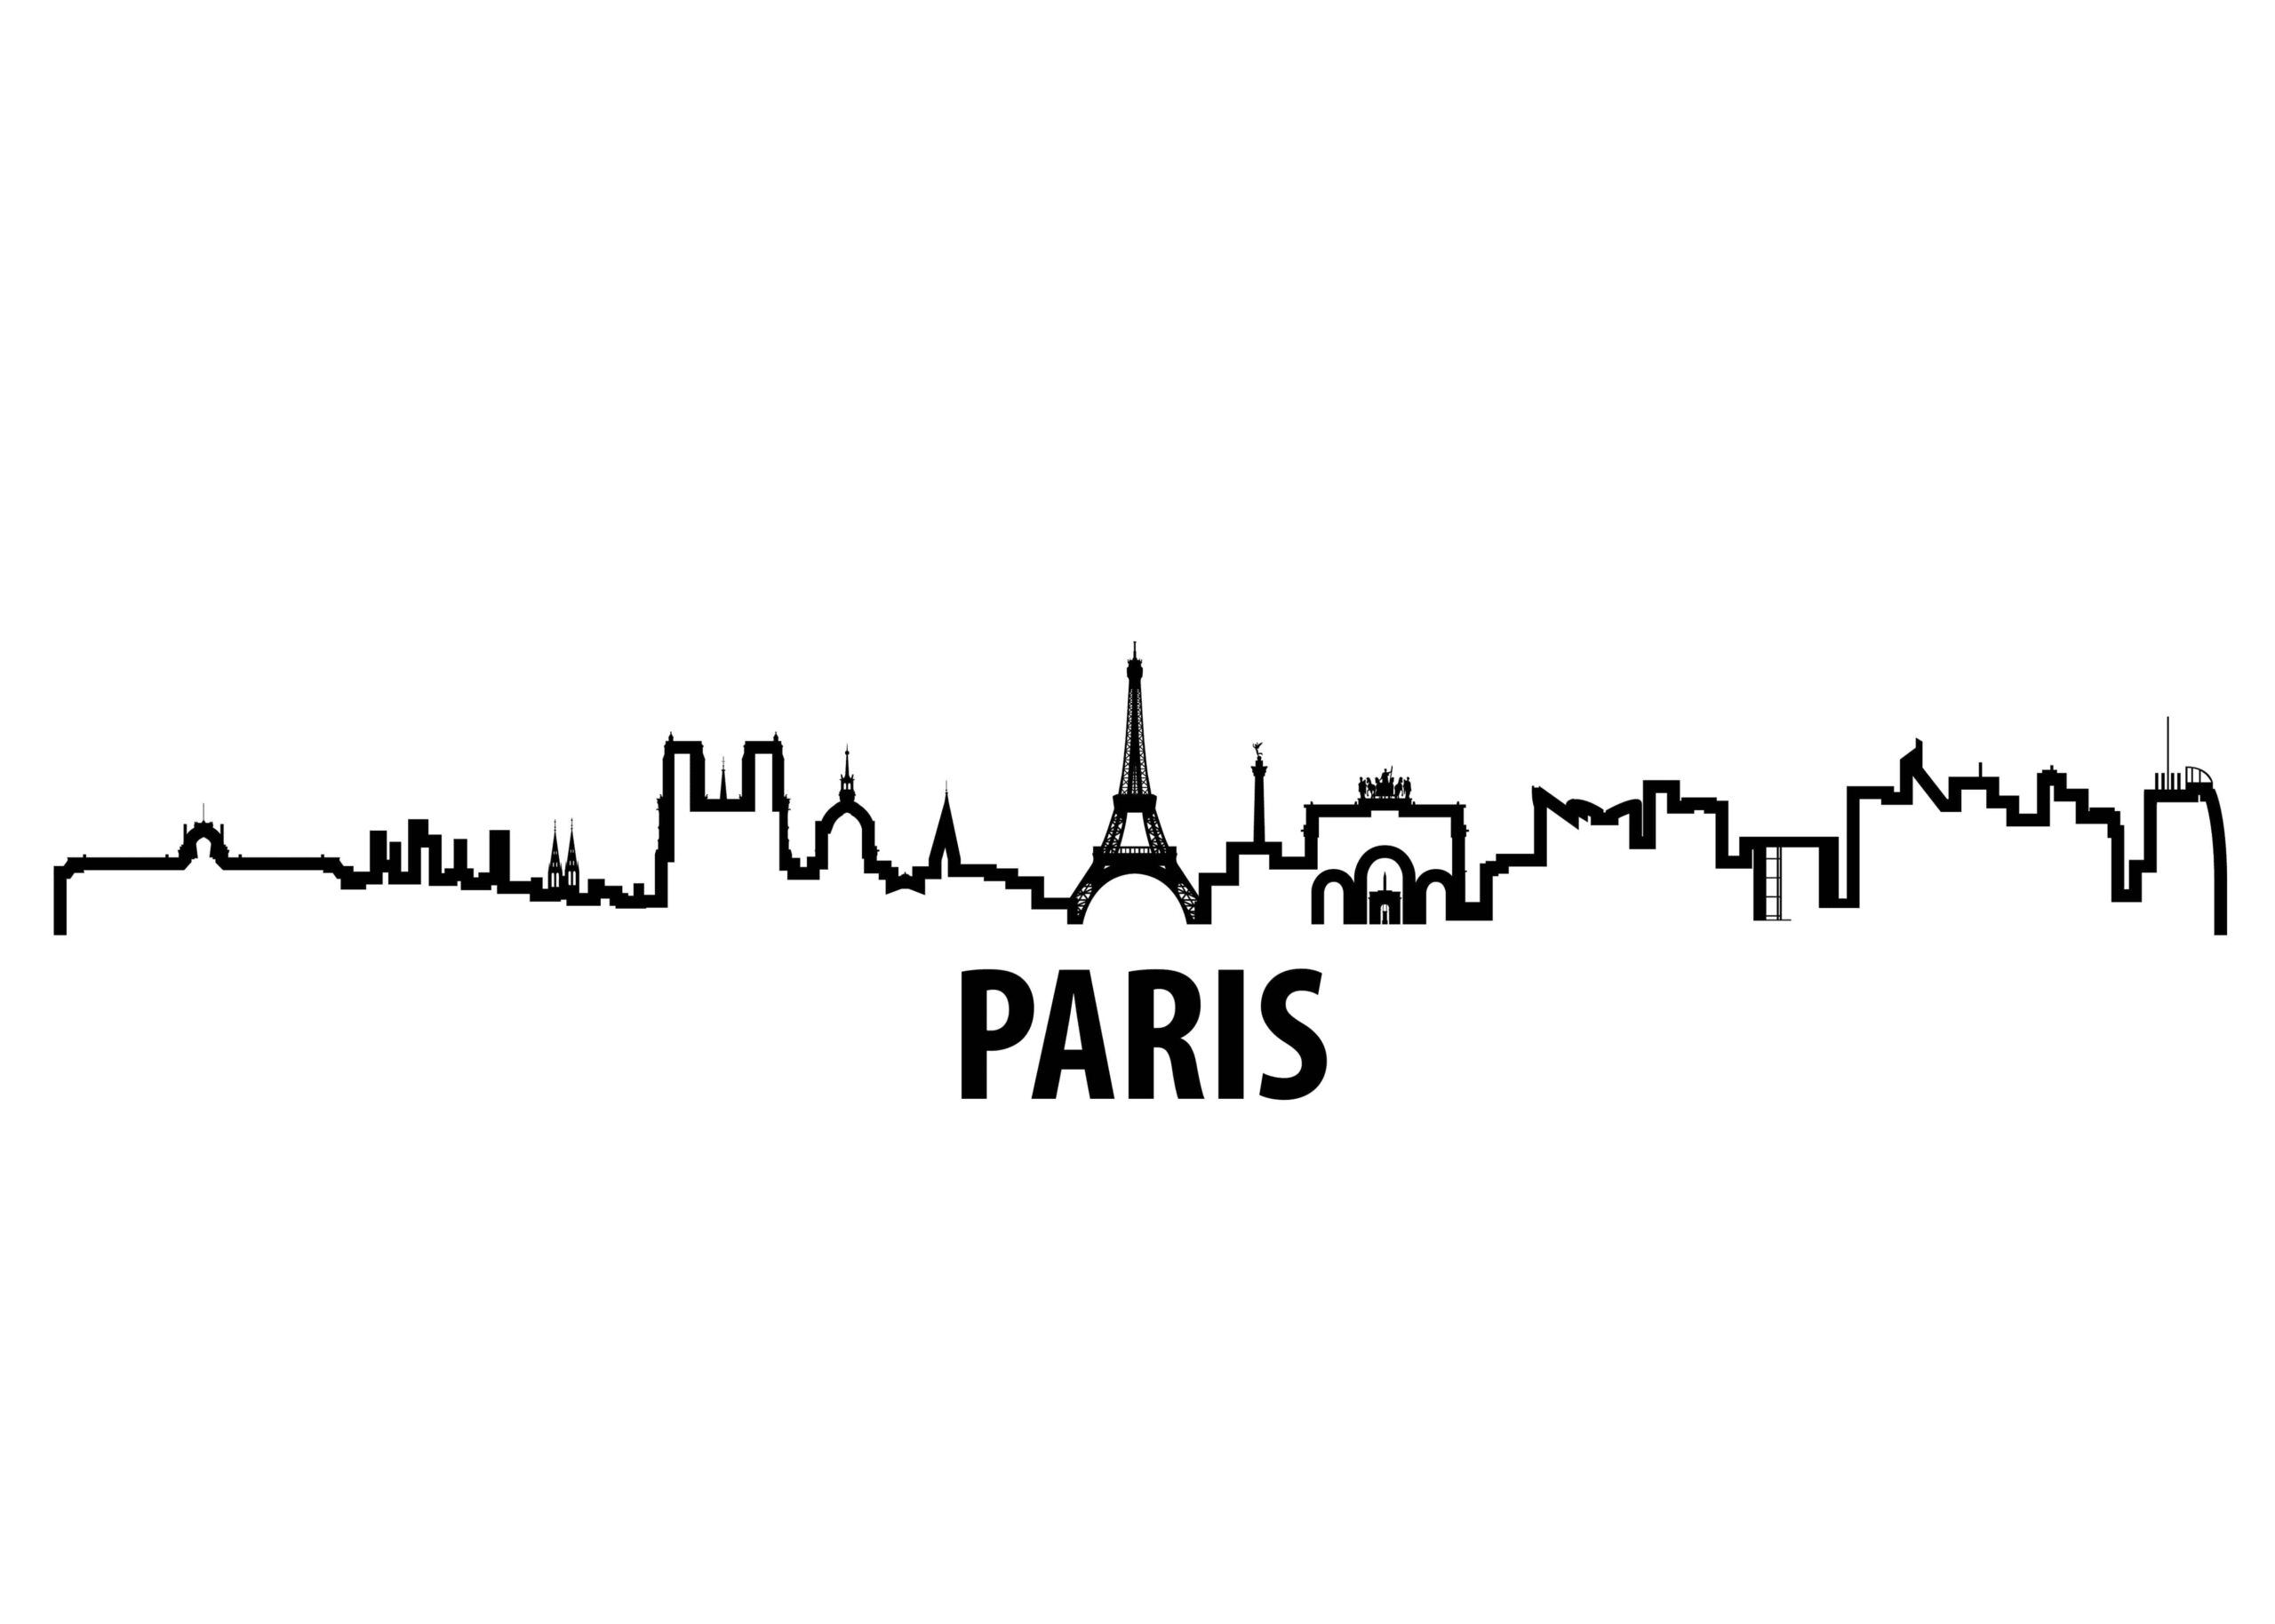 Paris skyline poster